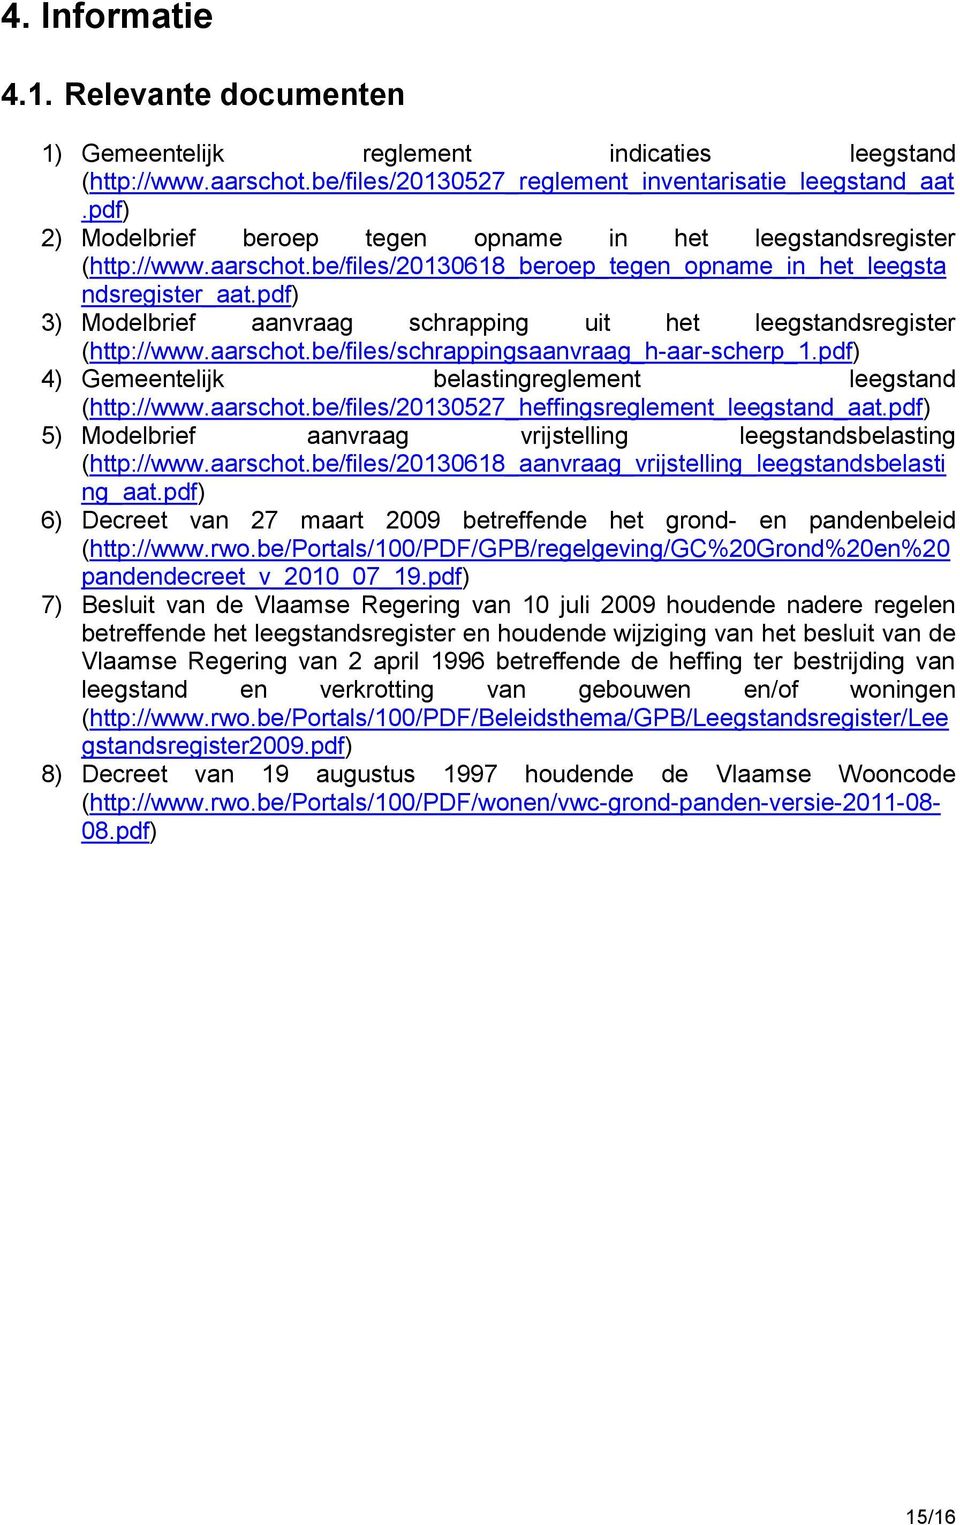 pdf) 3) Modelbrief aanvraag schrapping uit het leegstandsregister (http://www.aarschot.be/files/schrappingsaanvraag_h-aar-scherp_1.pdf) 4) Gemeentelijk belastingreglement leegstand (http://www.